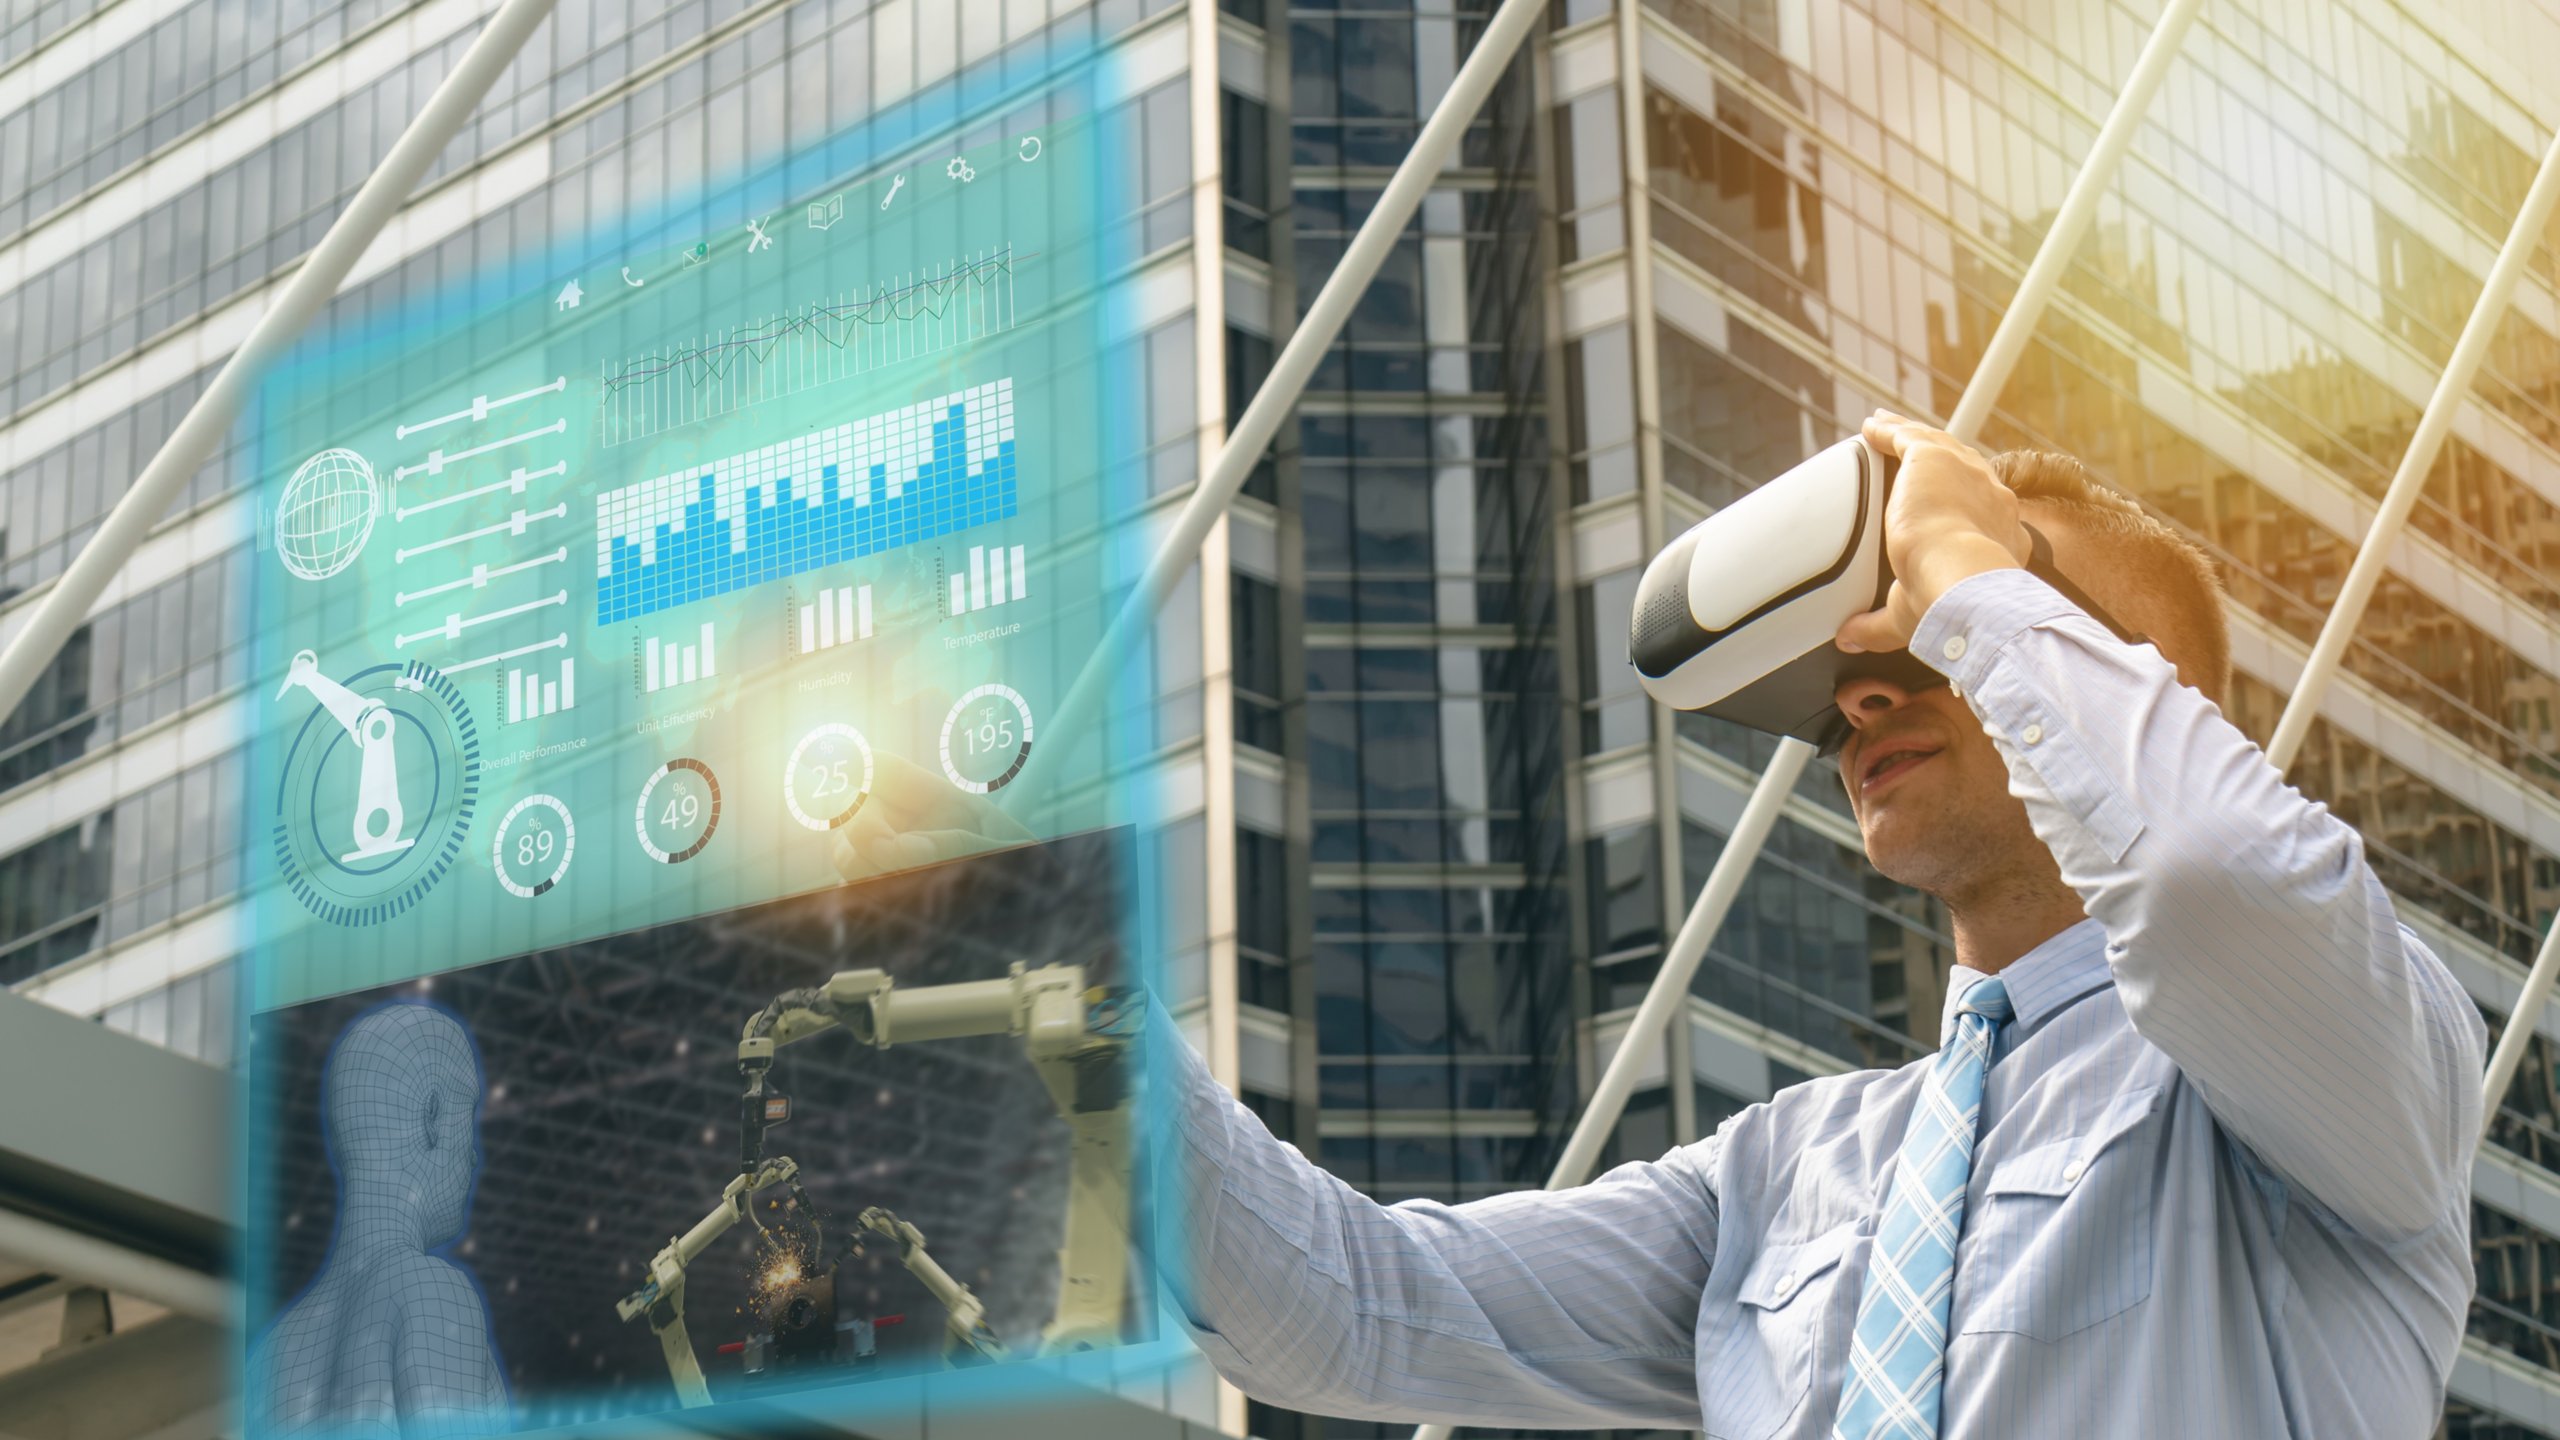 Un hombre con camisa y corbata lleva unos auriculares VR e introduce información en una pantalla virtual con un edificio como telón de fondo